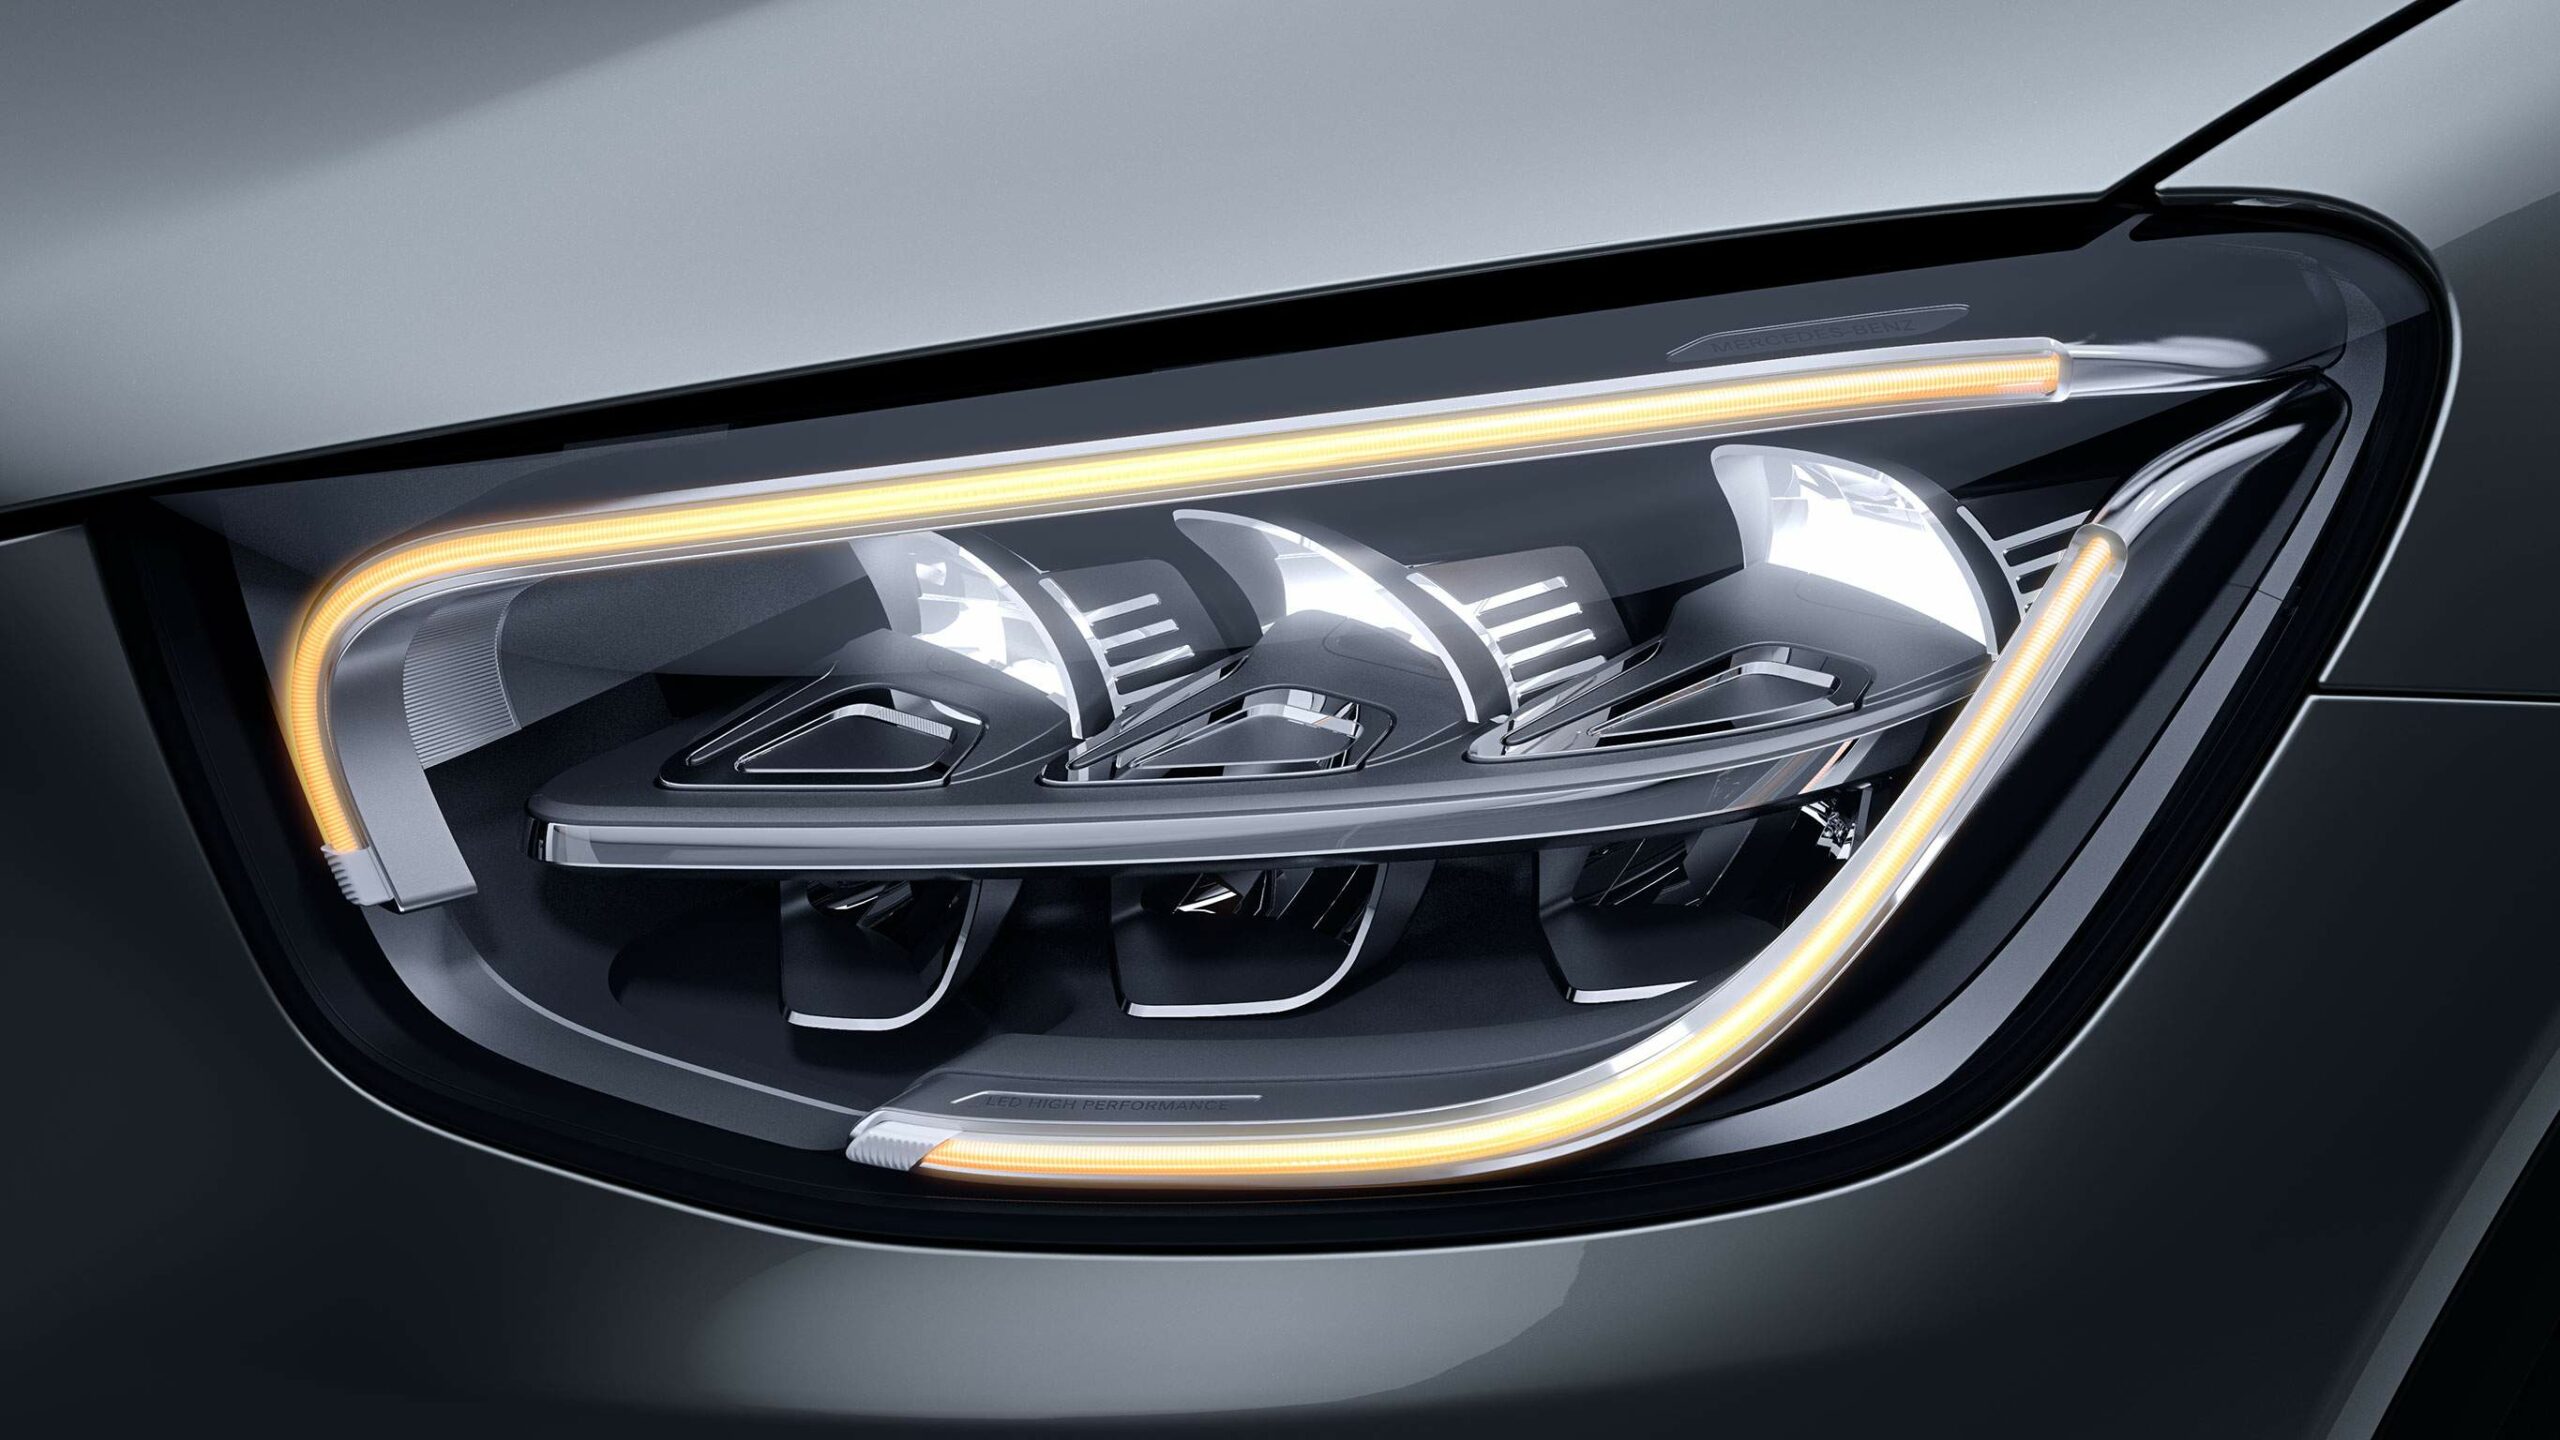 Faros frontales inteligentes de la GLC SUV de Mercedes-Benz